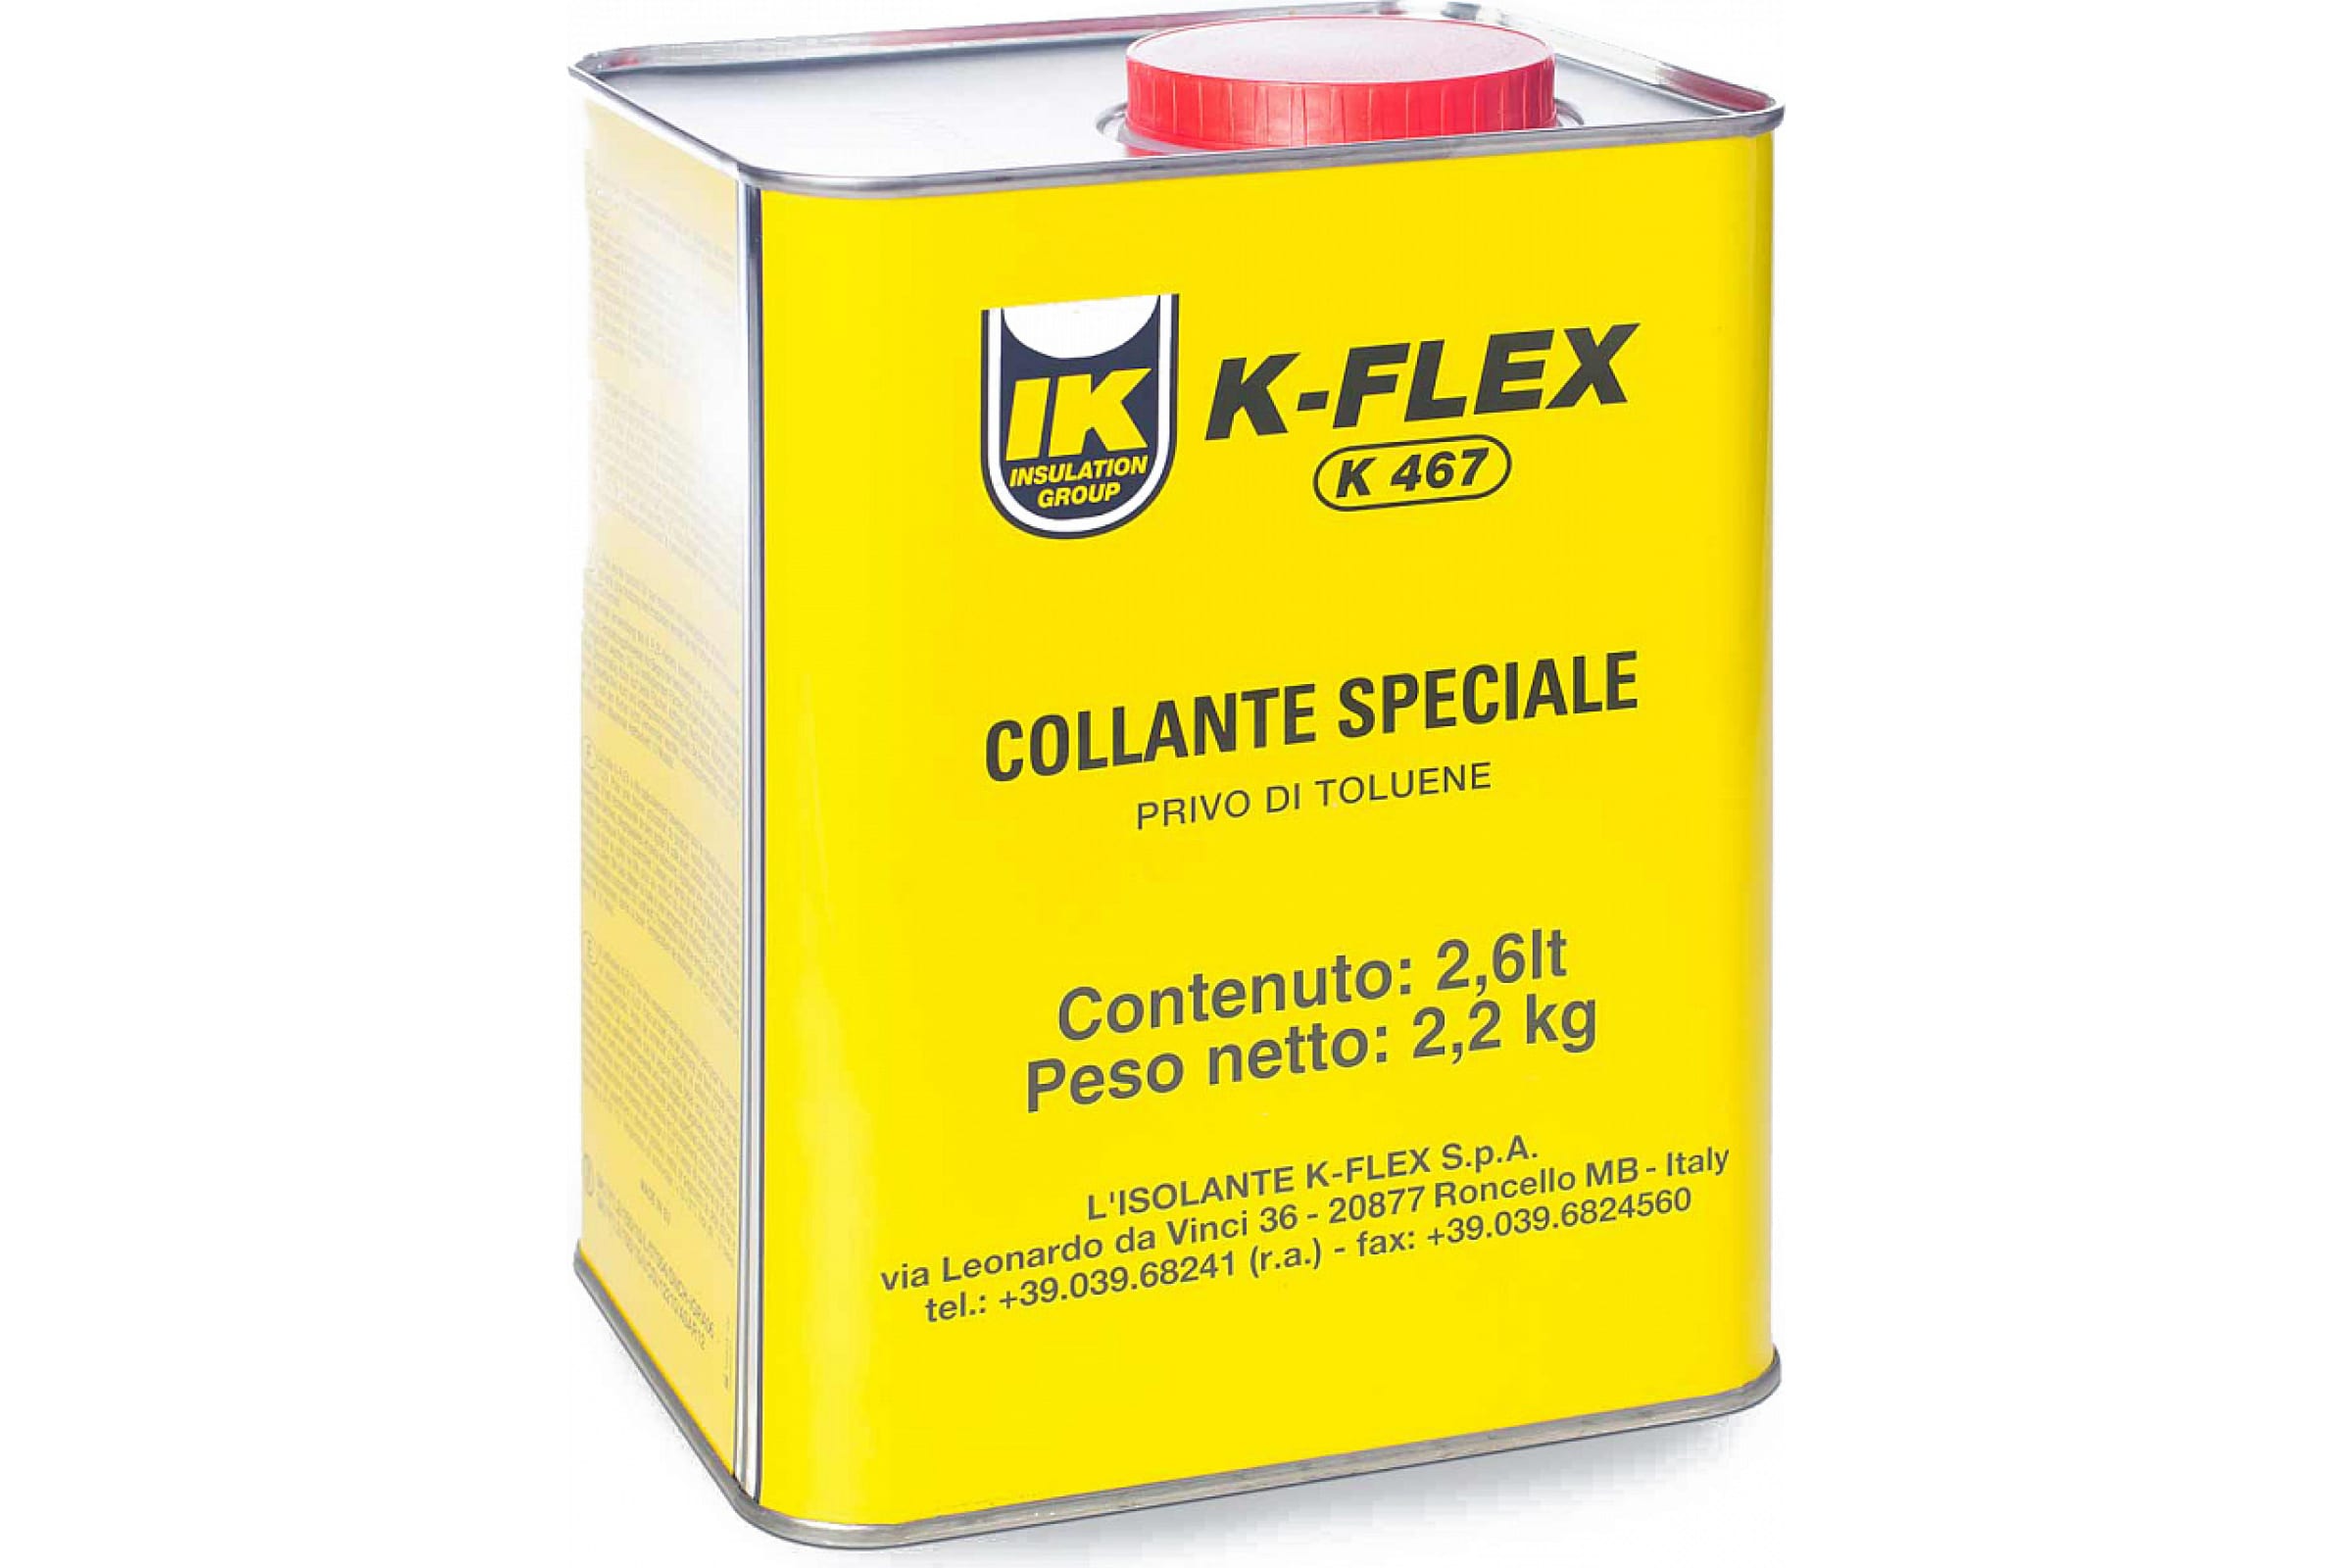 K-FLEX Клей для теплоизоляции 2.6 lt K 467 850CL020045